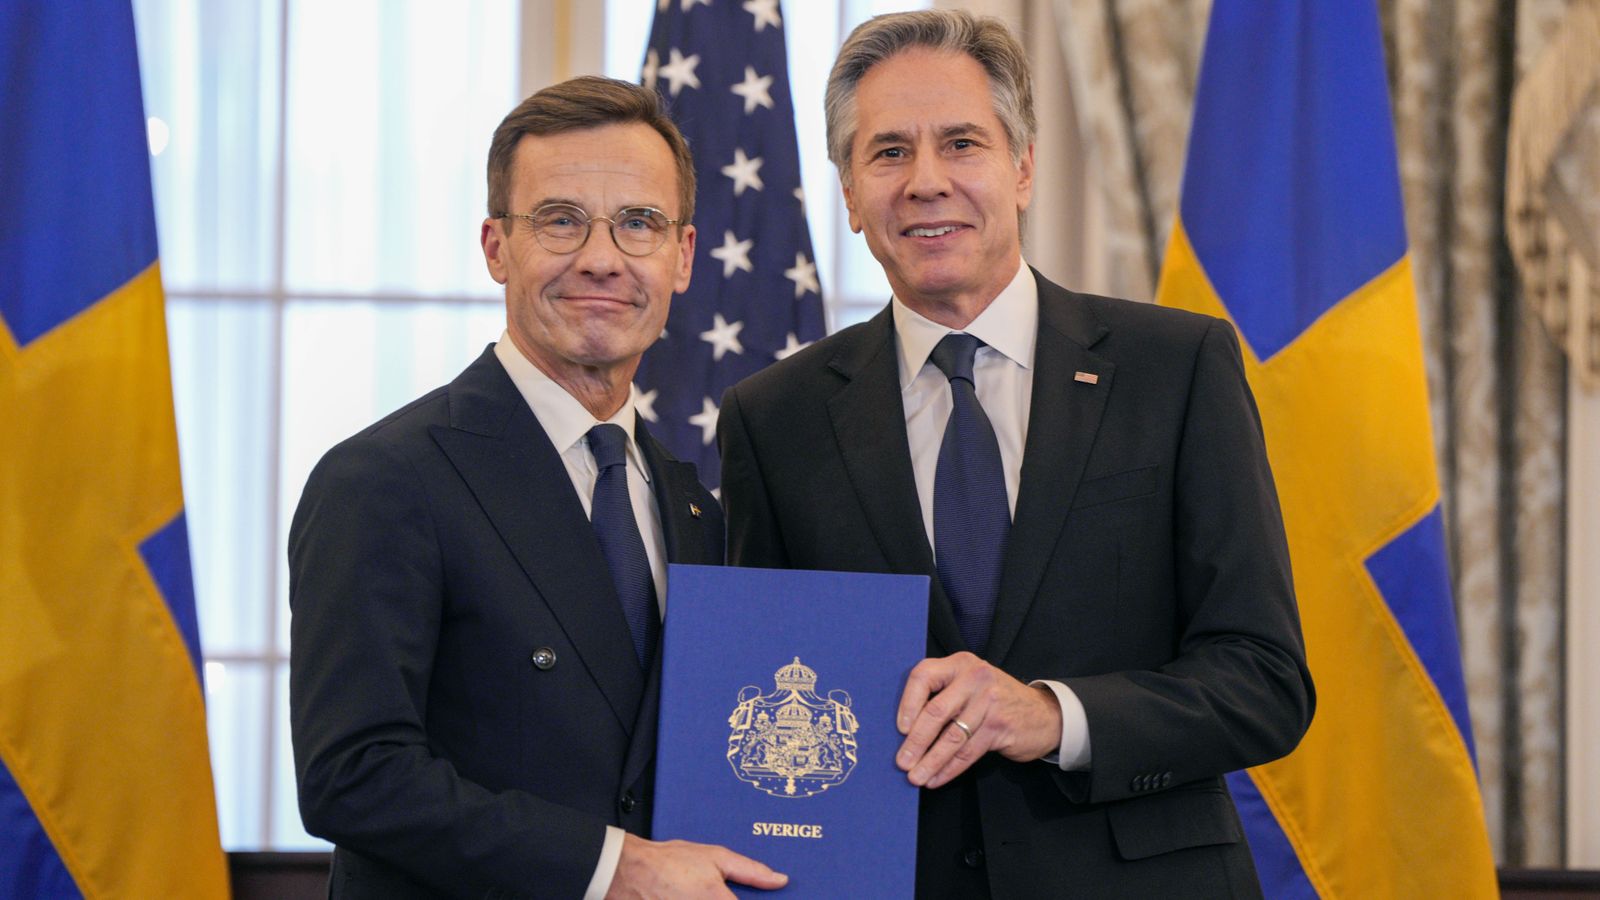 Швеция присоединяется к НАТО на фоне эскалации войны с Россией под руководством США